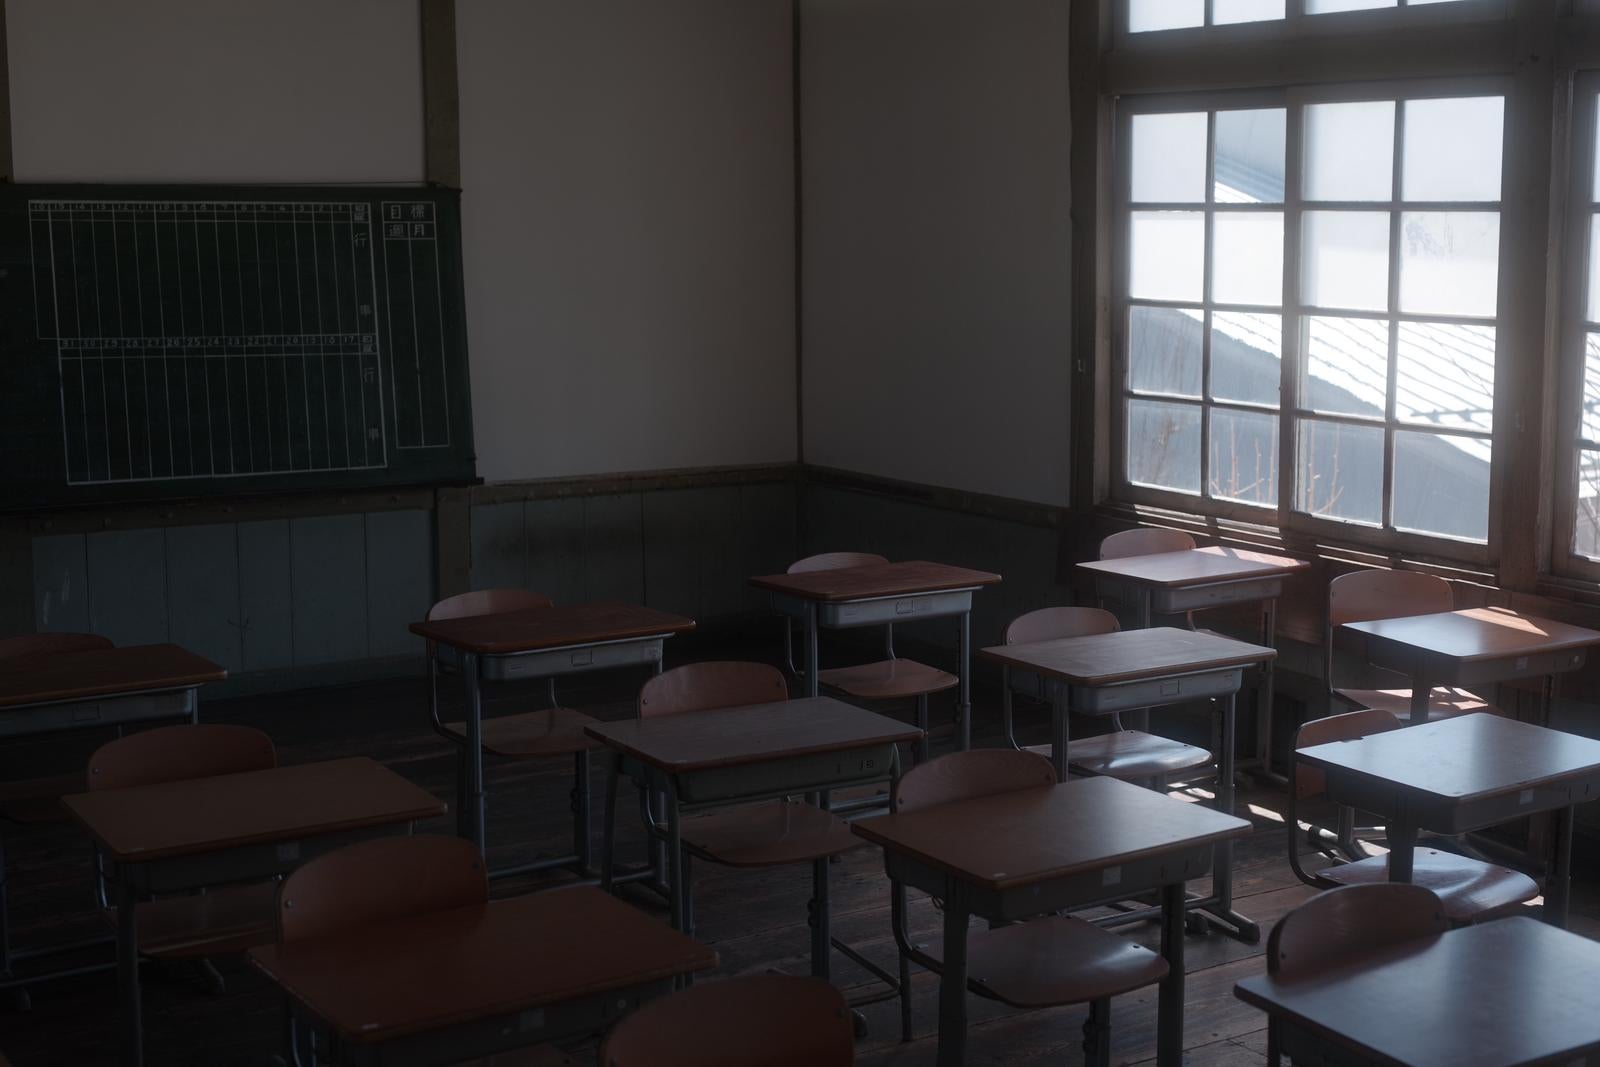 「放課後の教室と静けさの残響」の写真